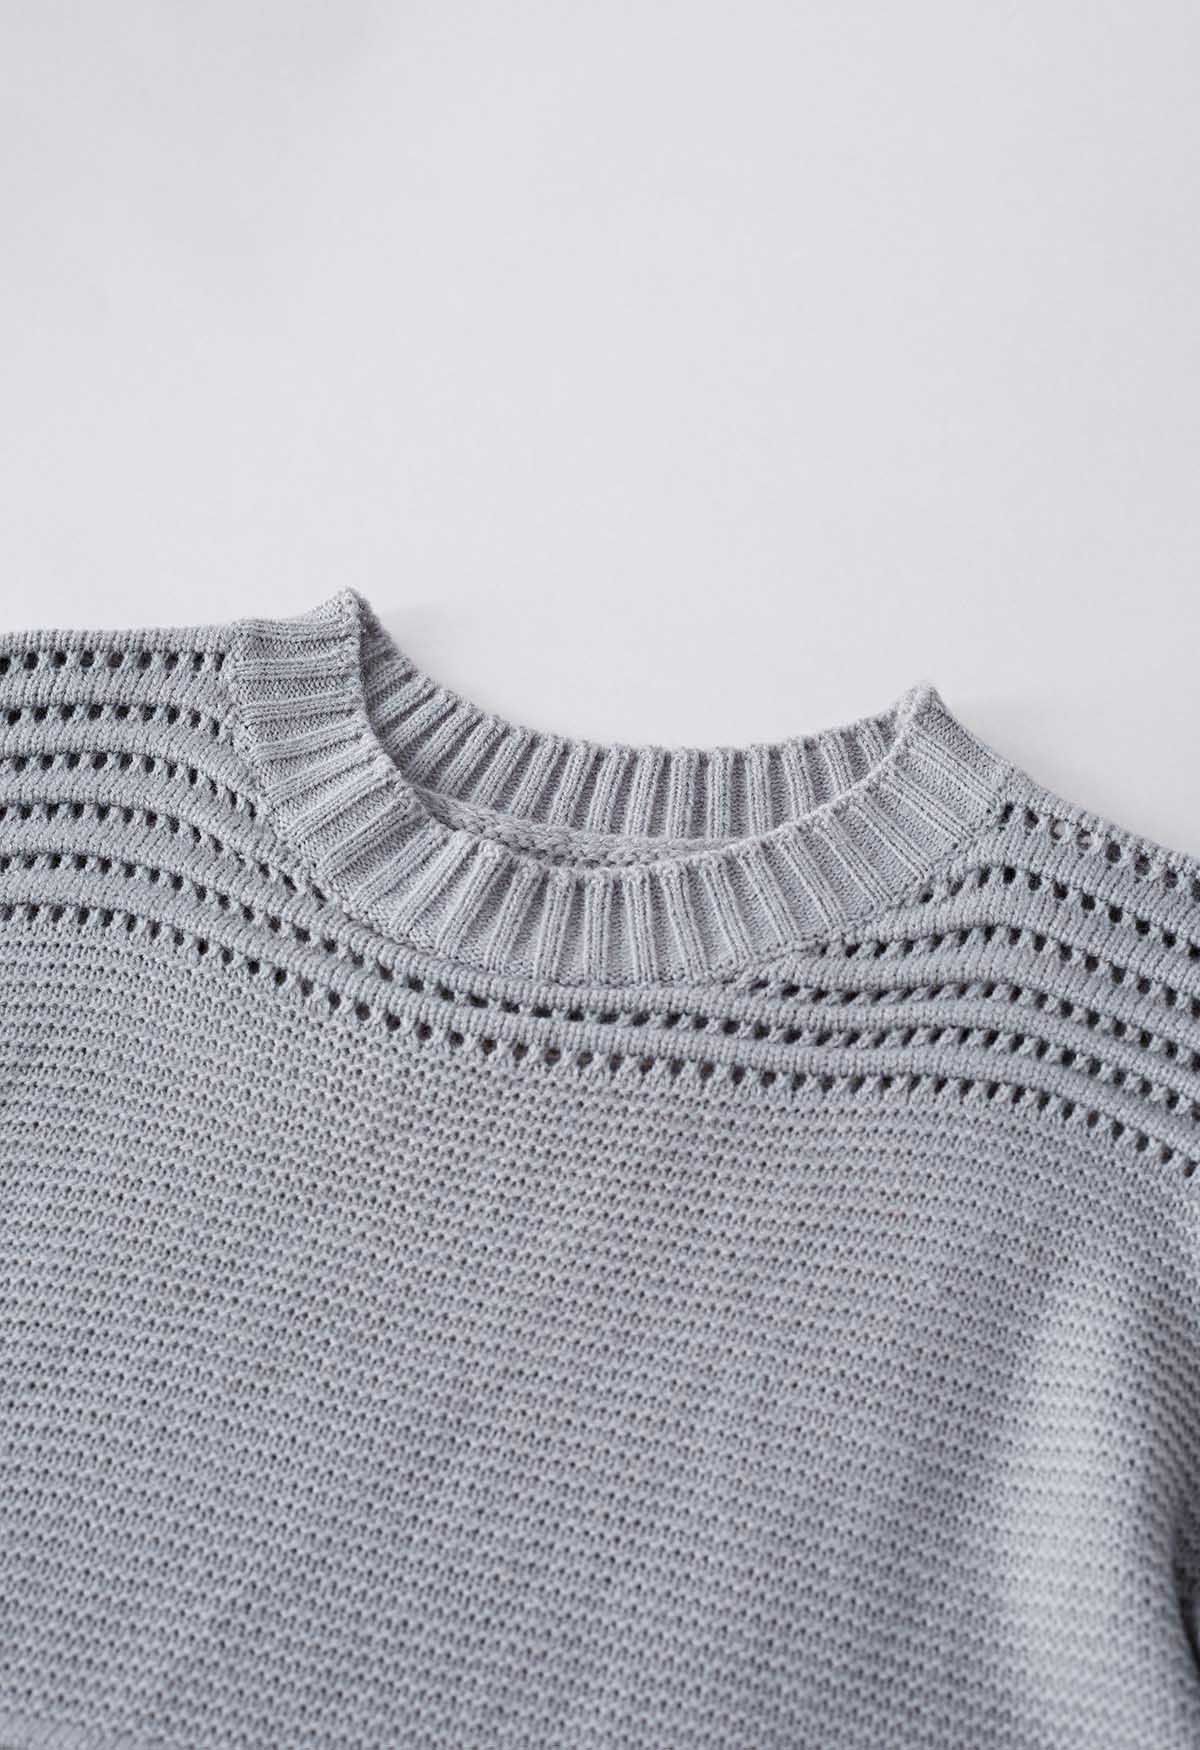 Suéter de punto calado con rayas en relieve en gris